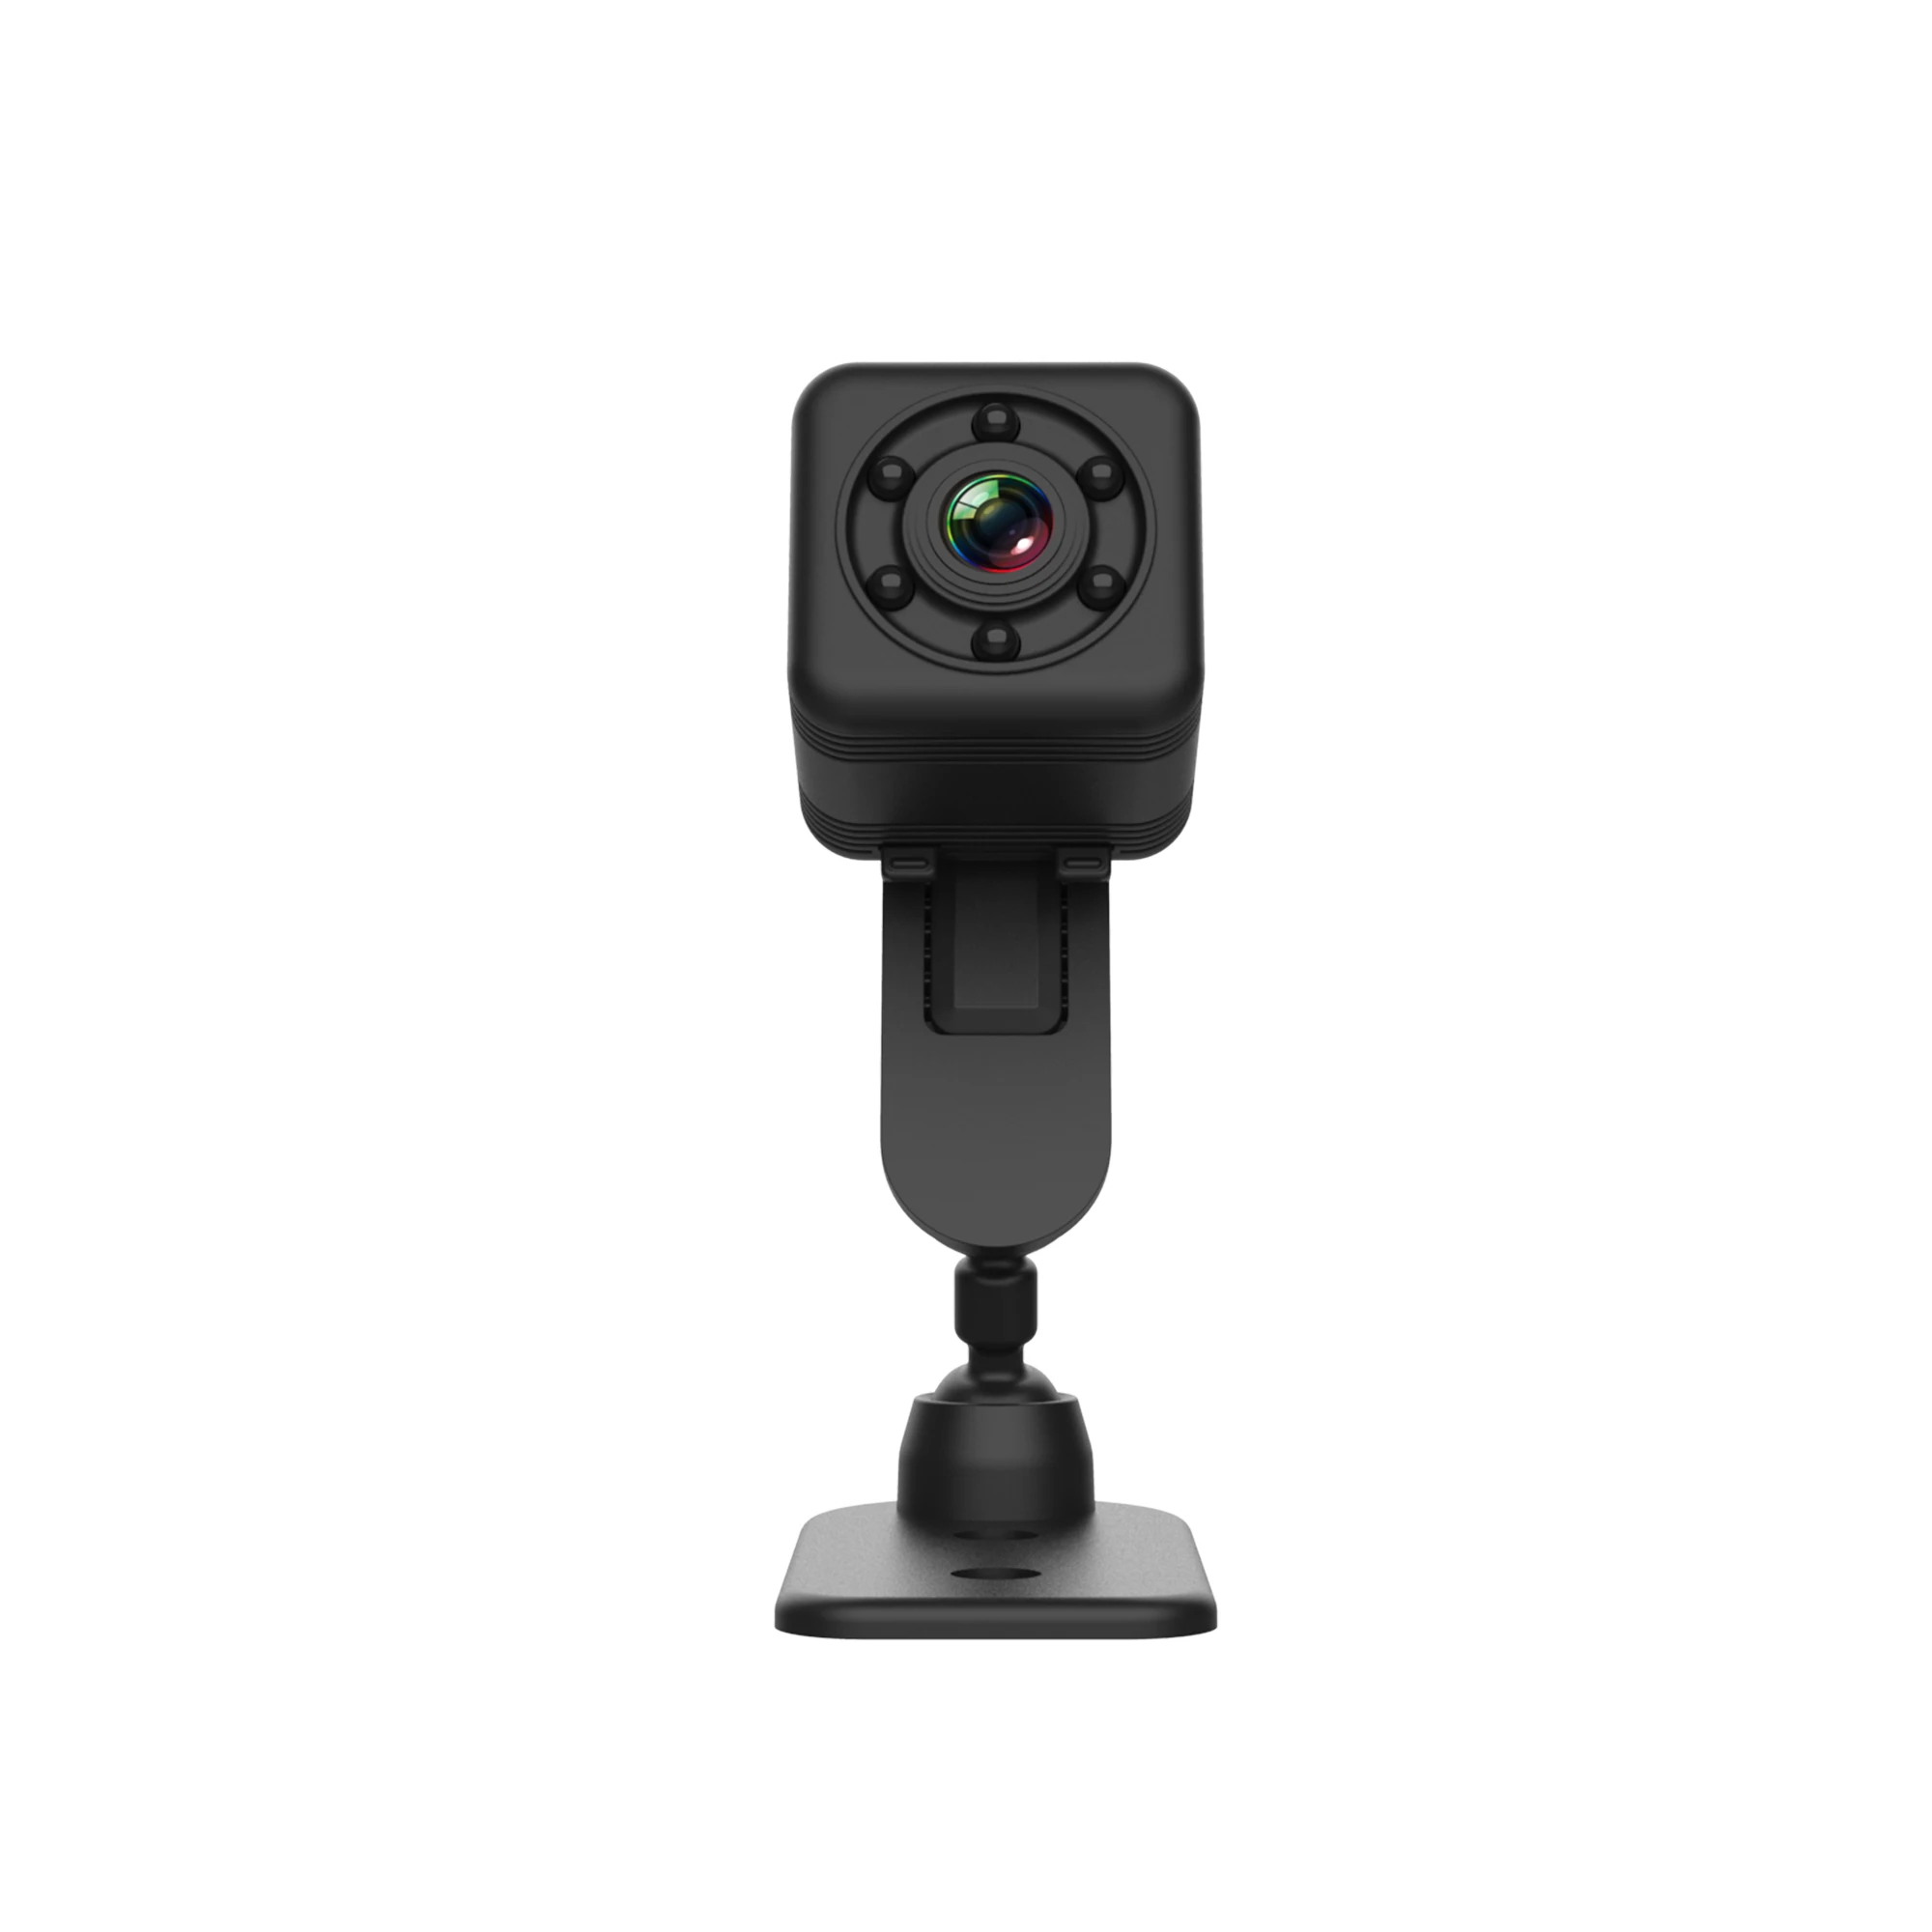 SQ29 Mini WiFi HD cámara infrarroja visión nocturna cámara deportiva con soporte y funda resistente al agua HEREB Cámara de red WiFi